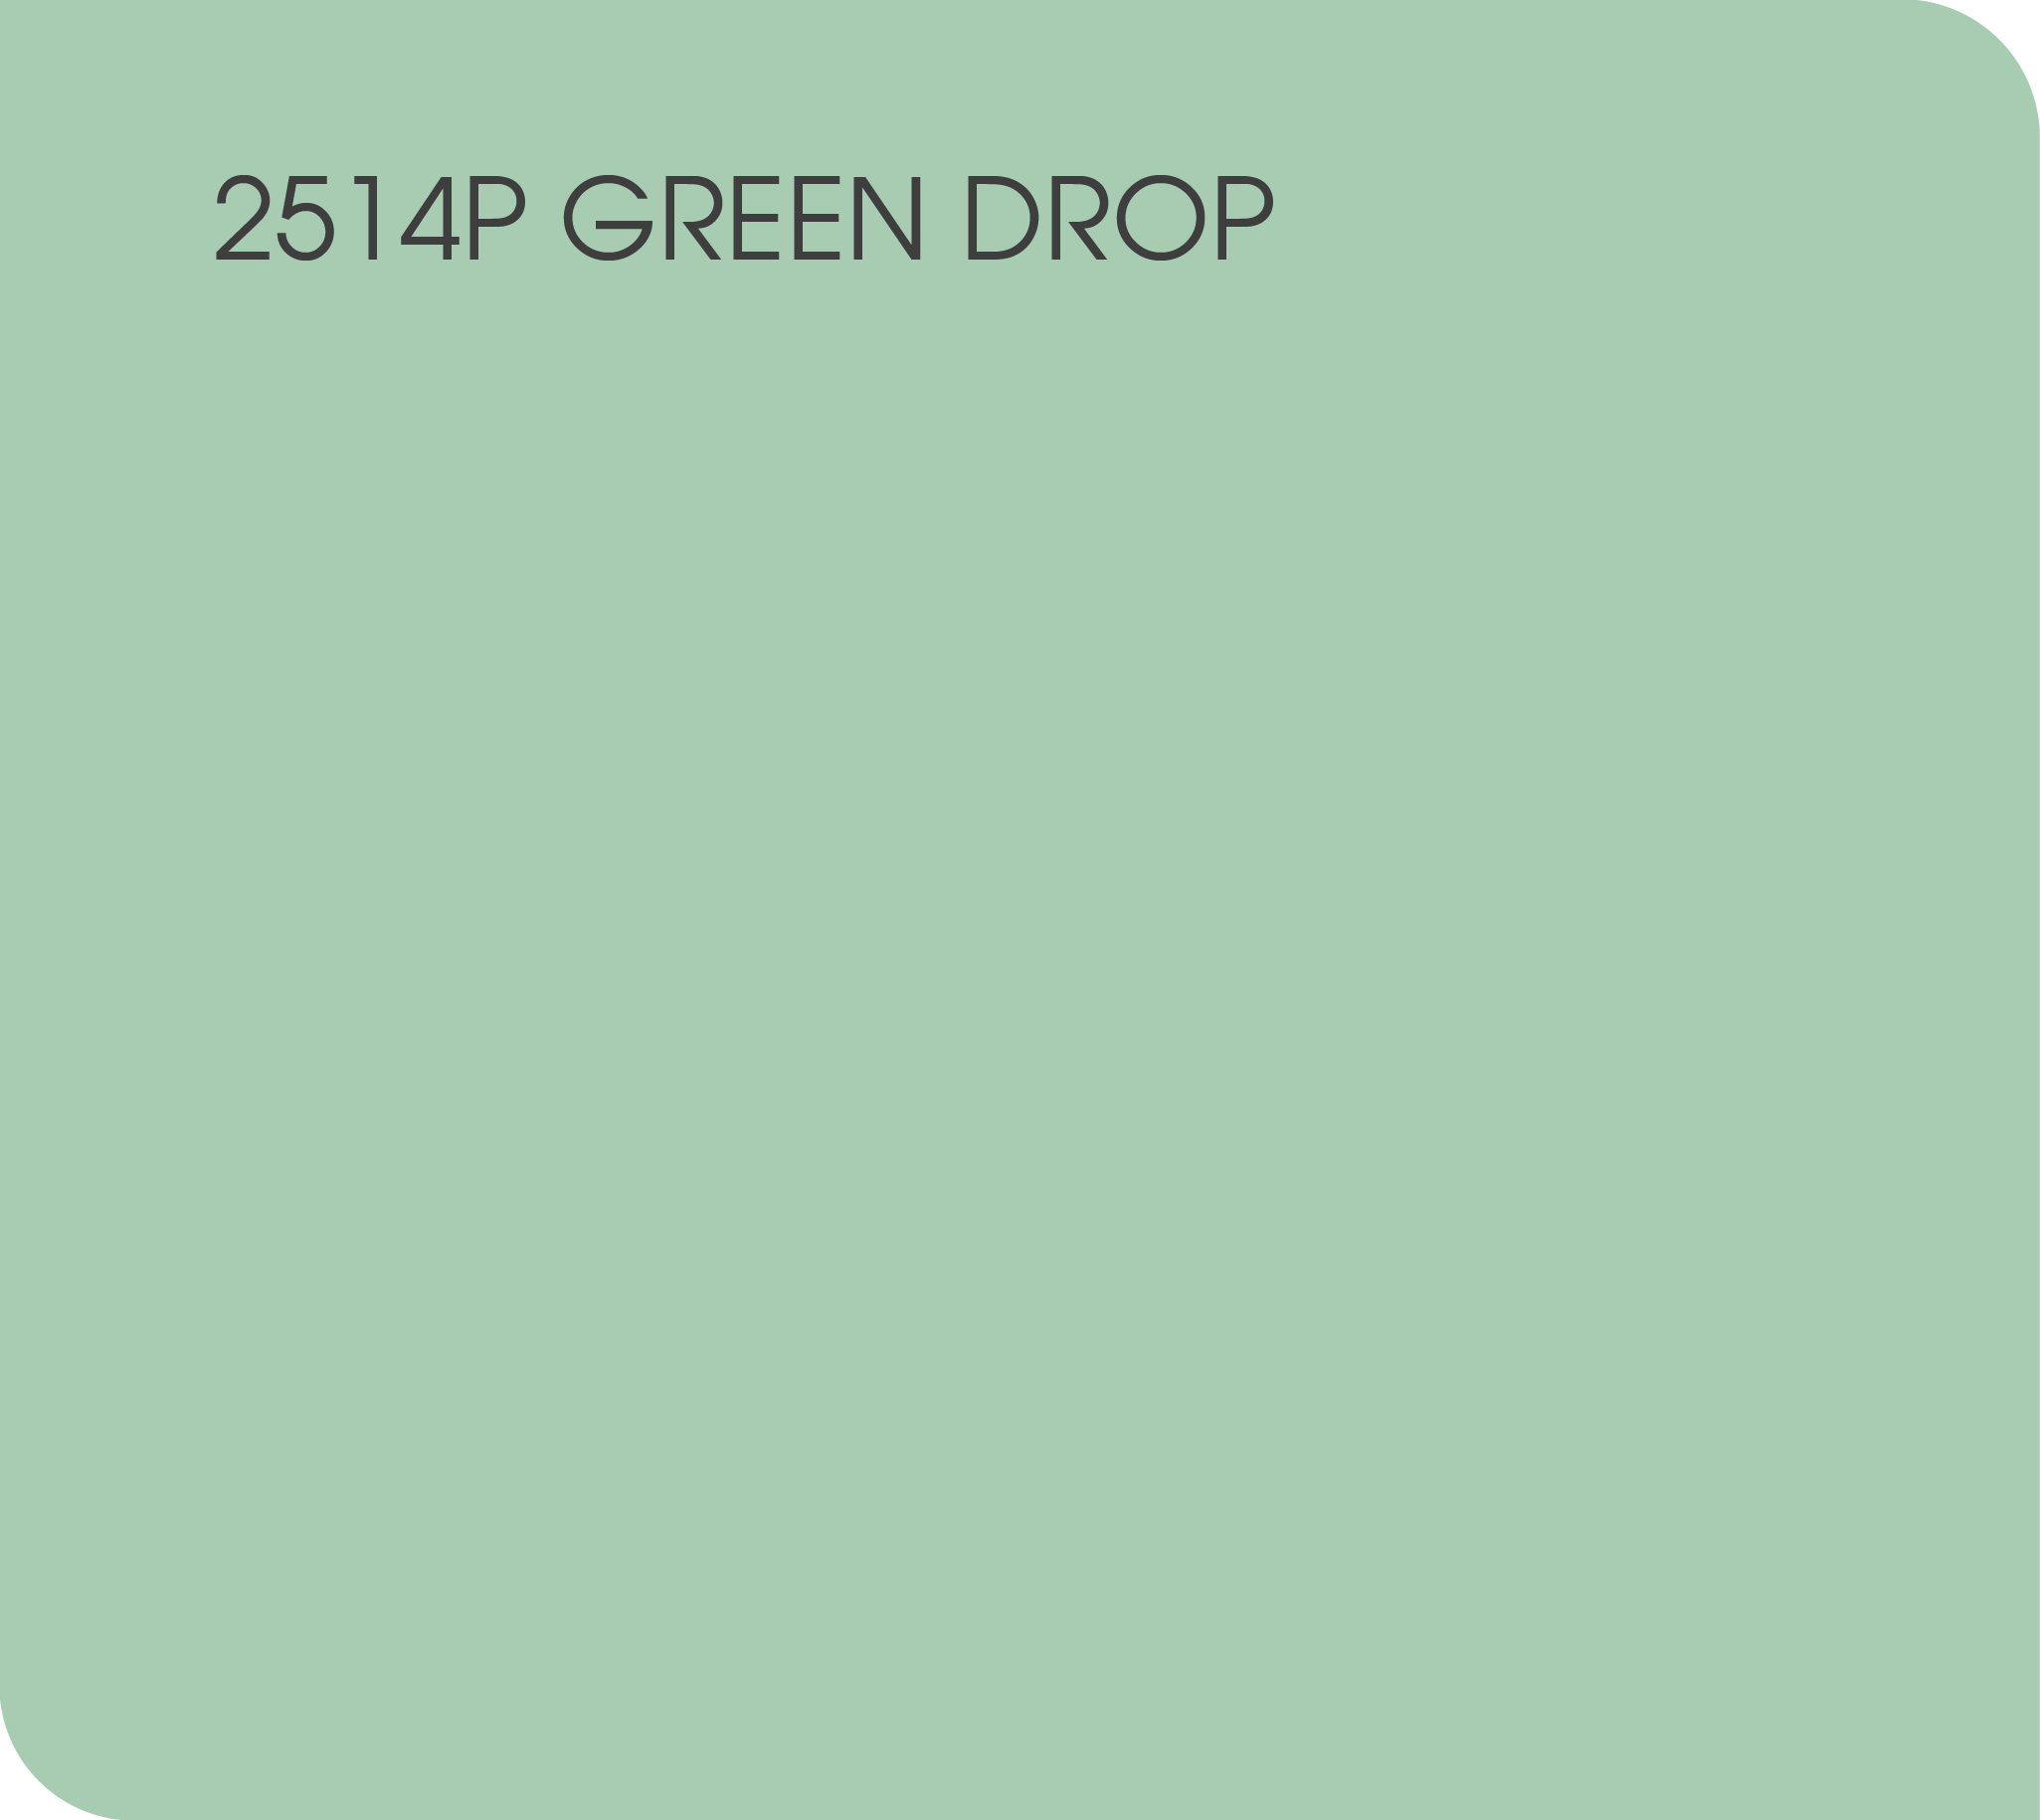 2514P green drop